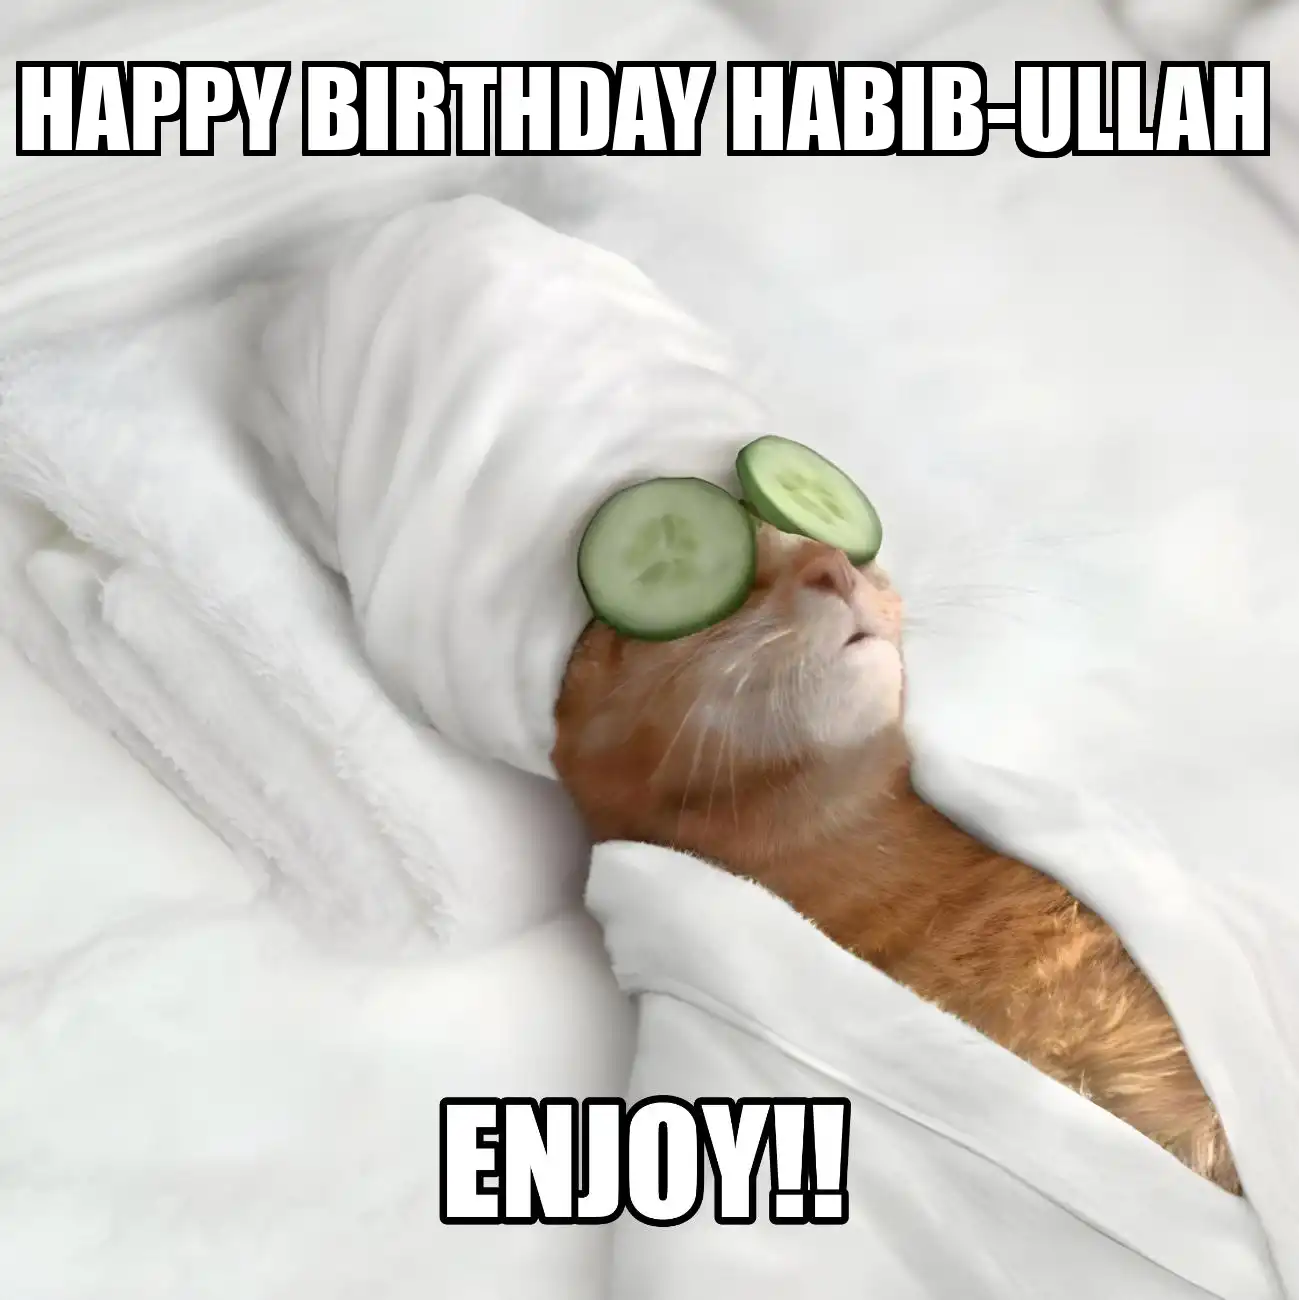 Happy Birthday Habib-ullah Enjoy Cat Meme